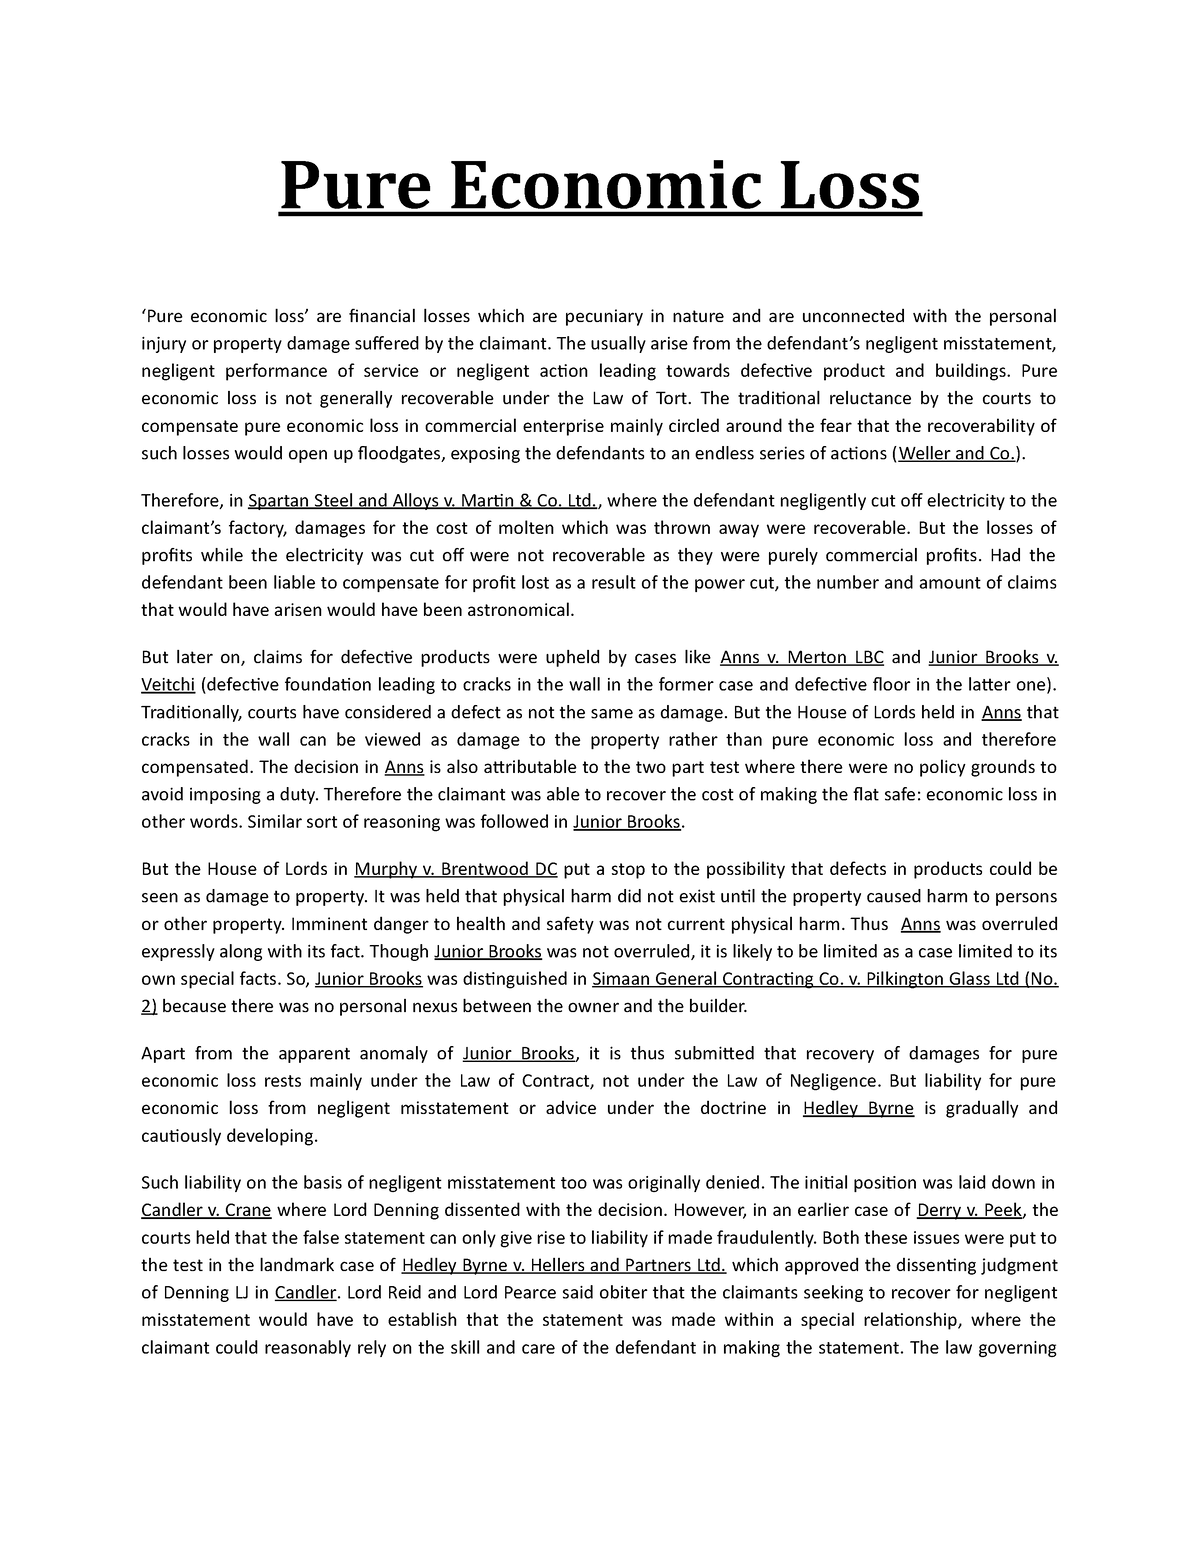 pure economic loss essay